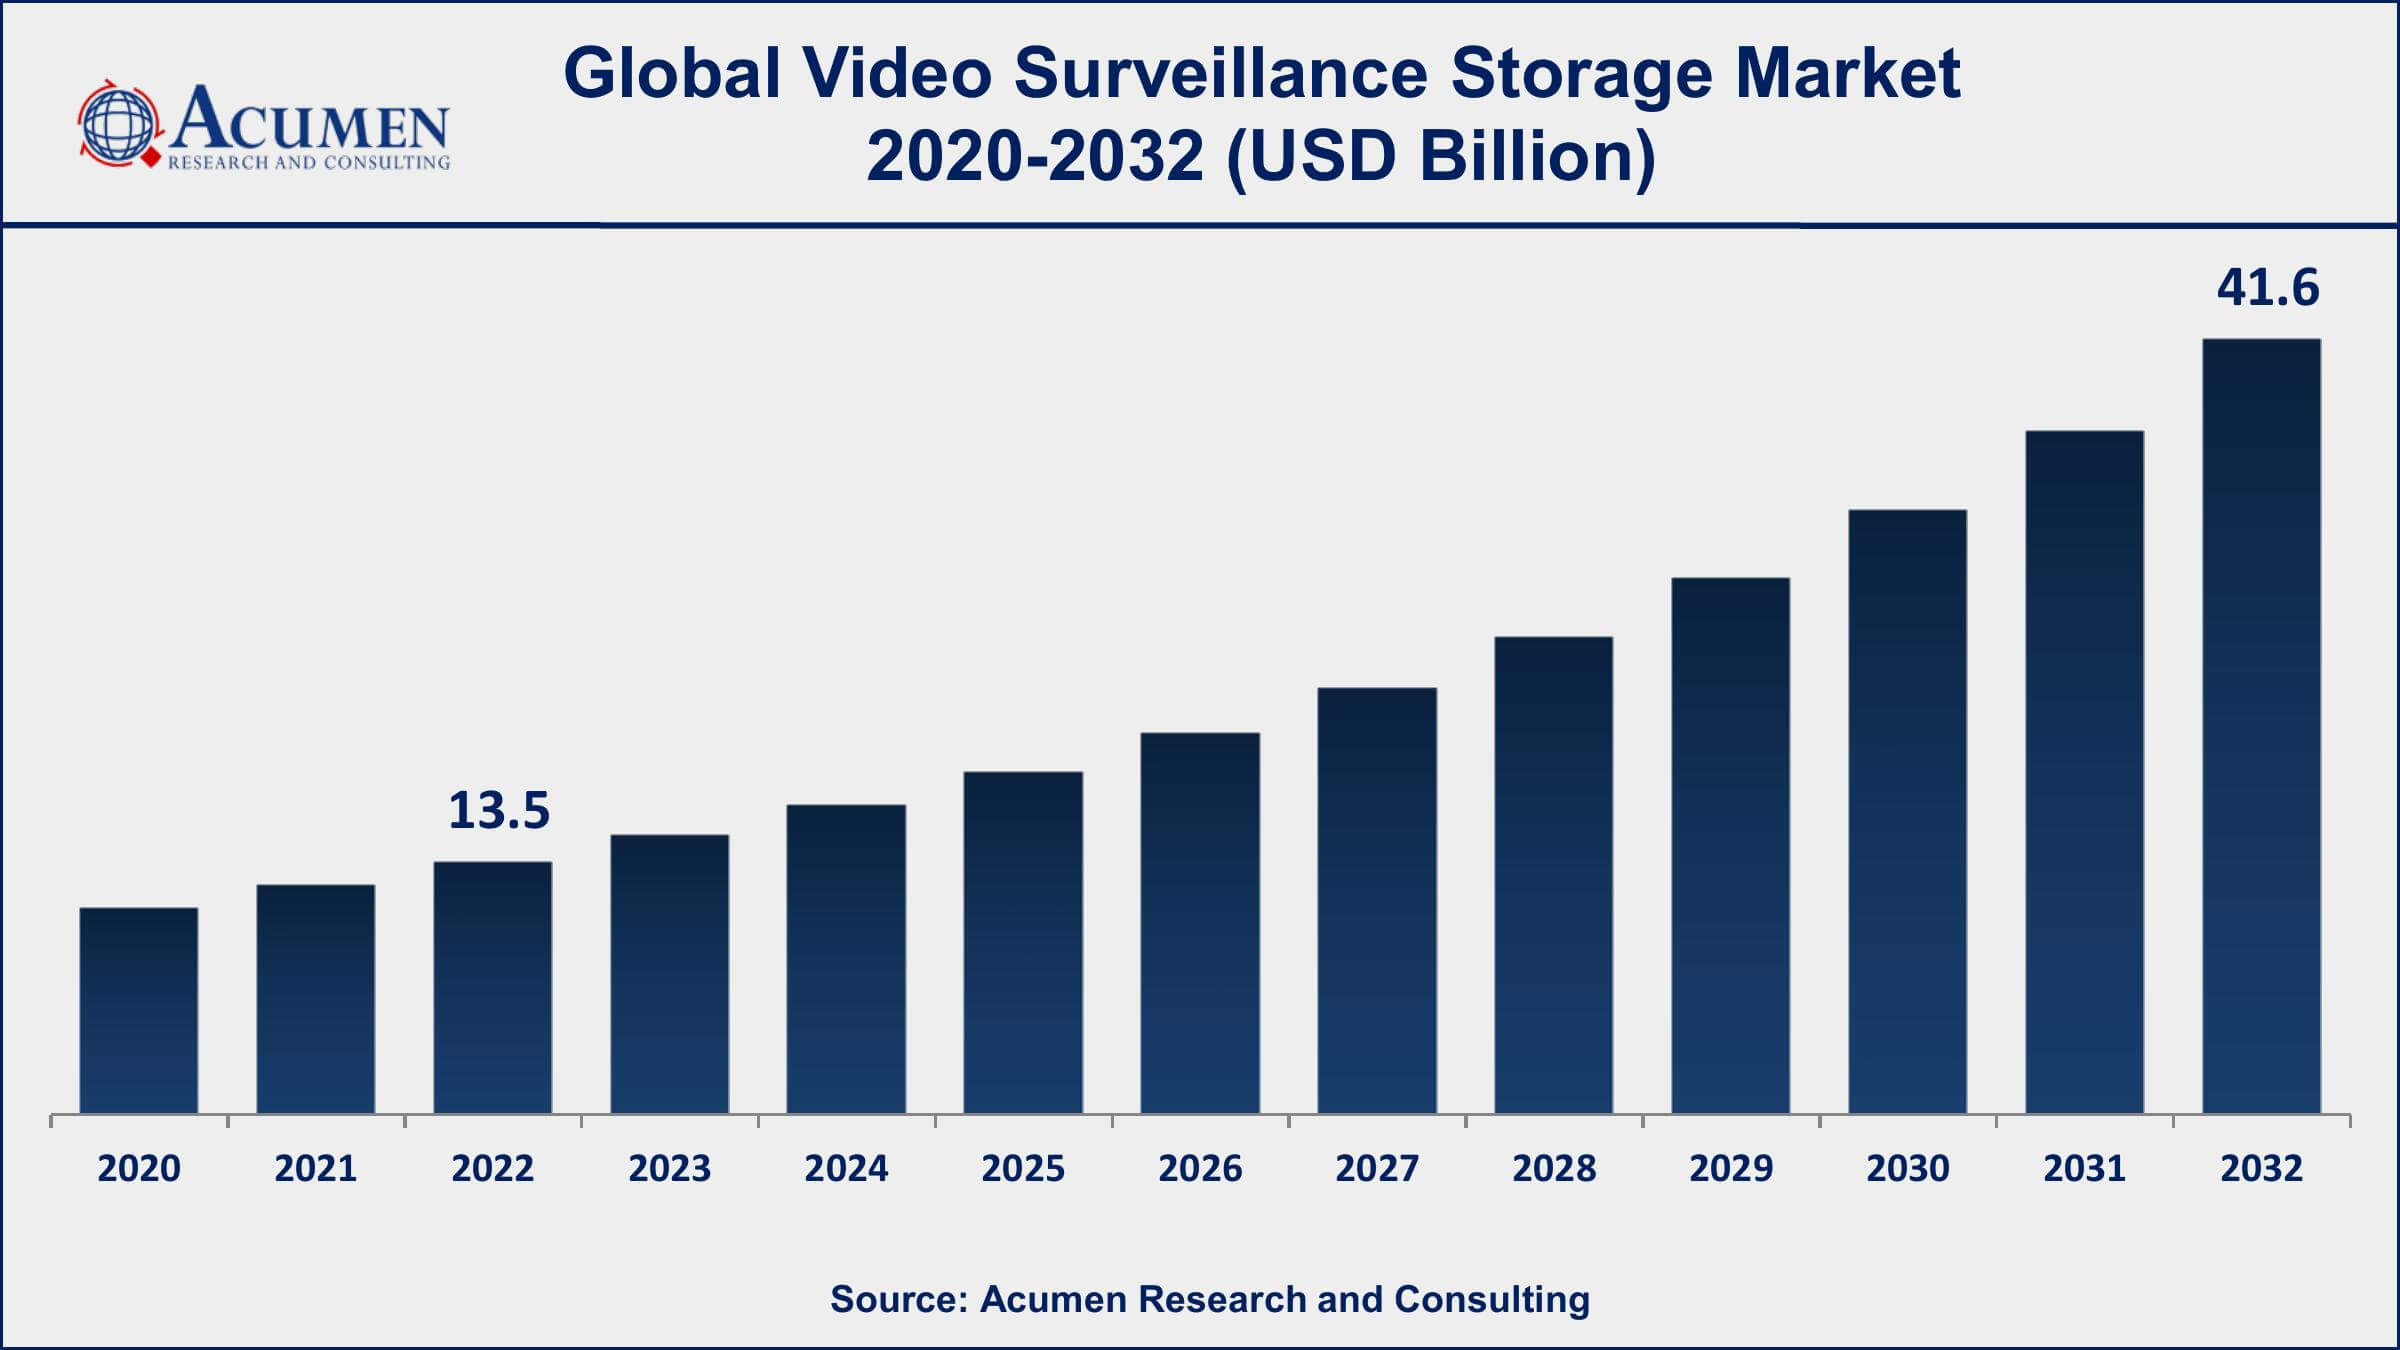 Video Surveillance Storage Market Drivers